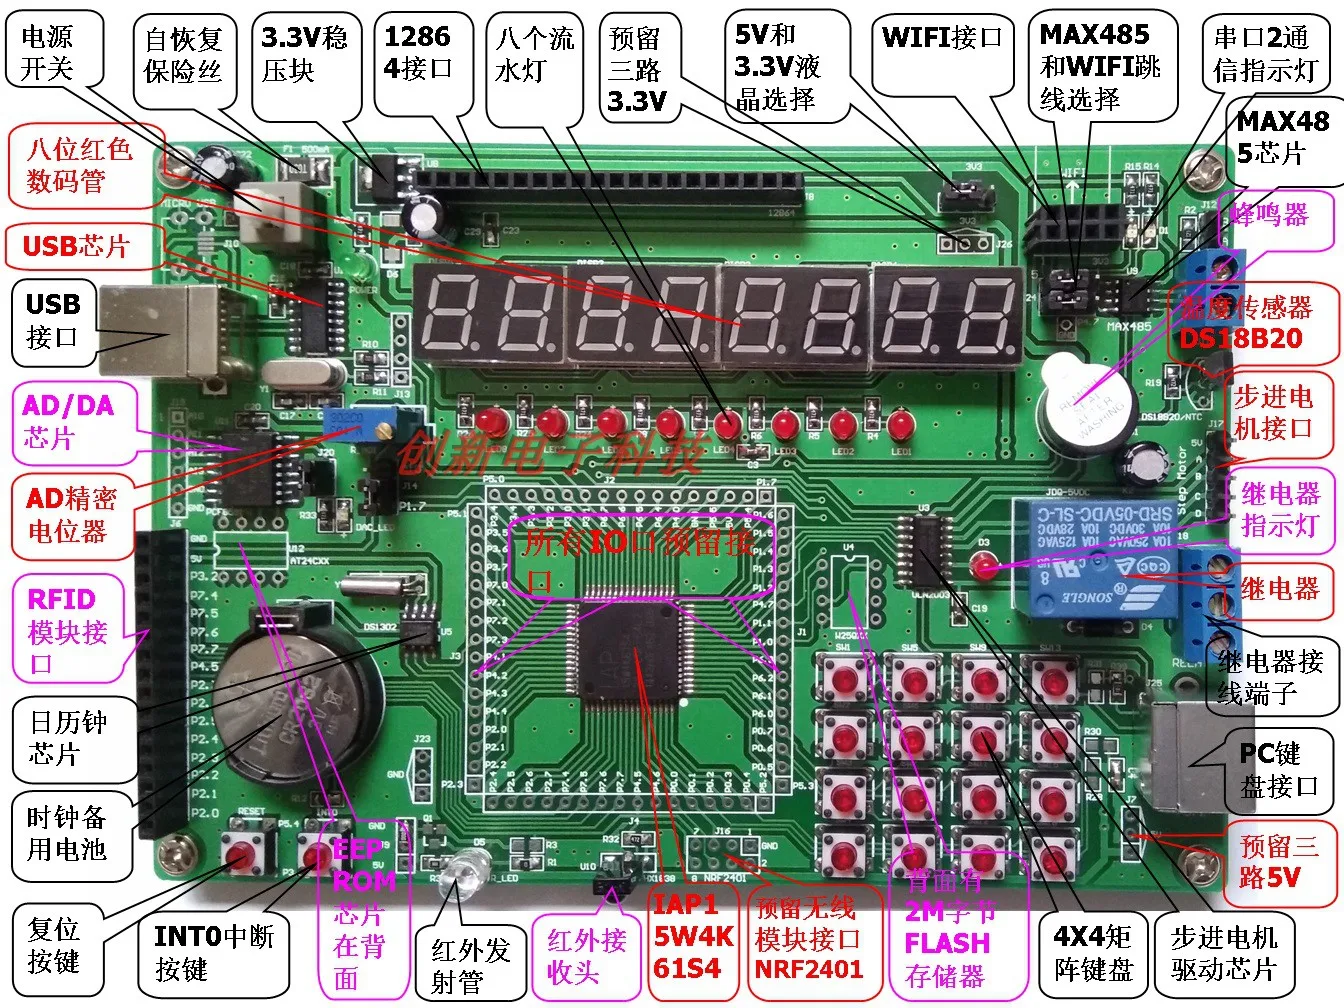 51-микрокомпьютер-с-одной-микросхемой-iap-stc-15-серии-макетная-плата-экспериментная-плата-iap15w4k61s4